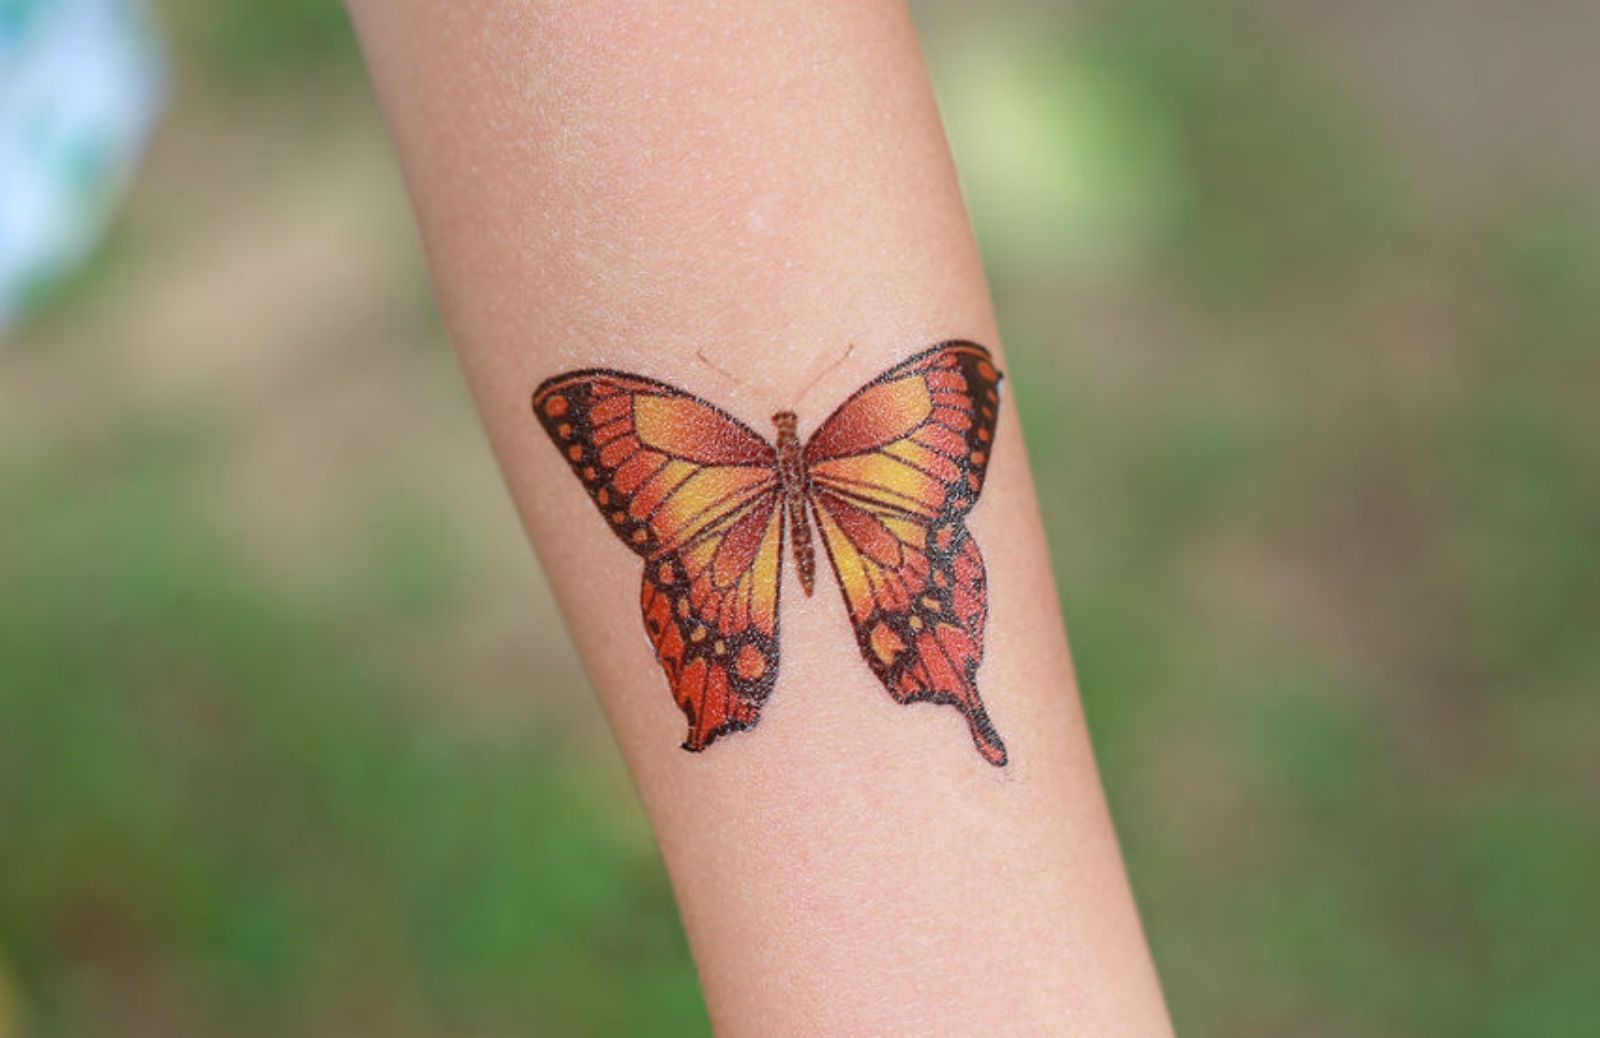 Cosa significa il tattoo farfalla?